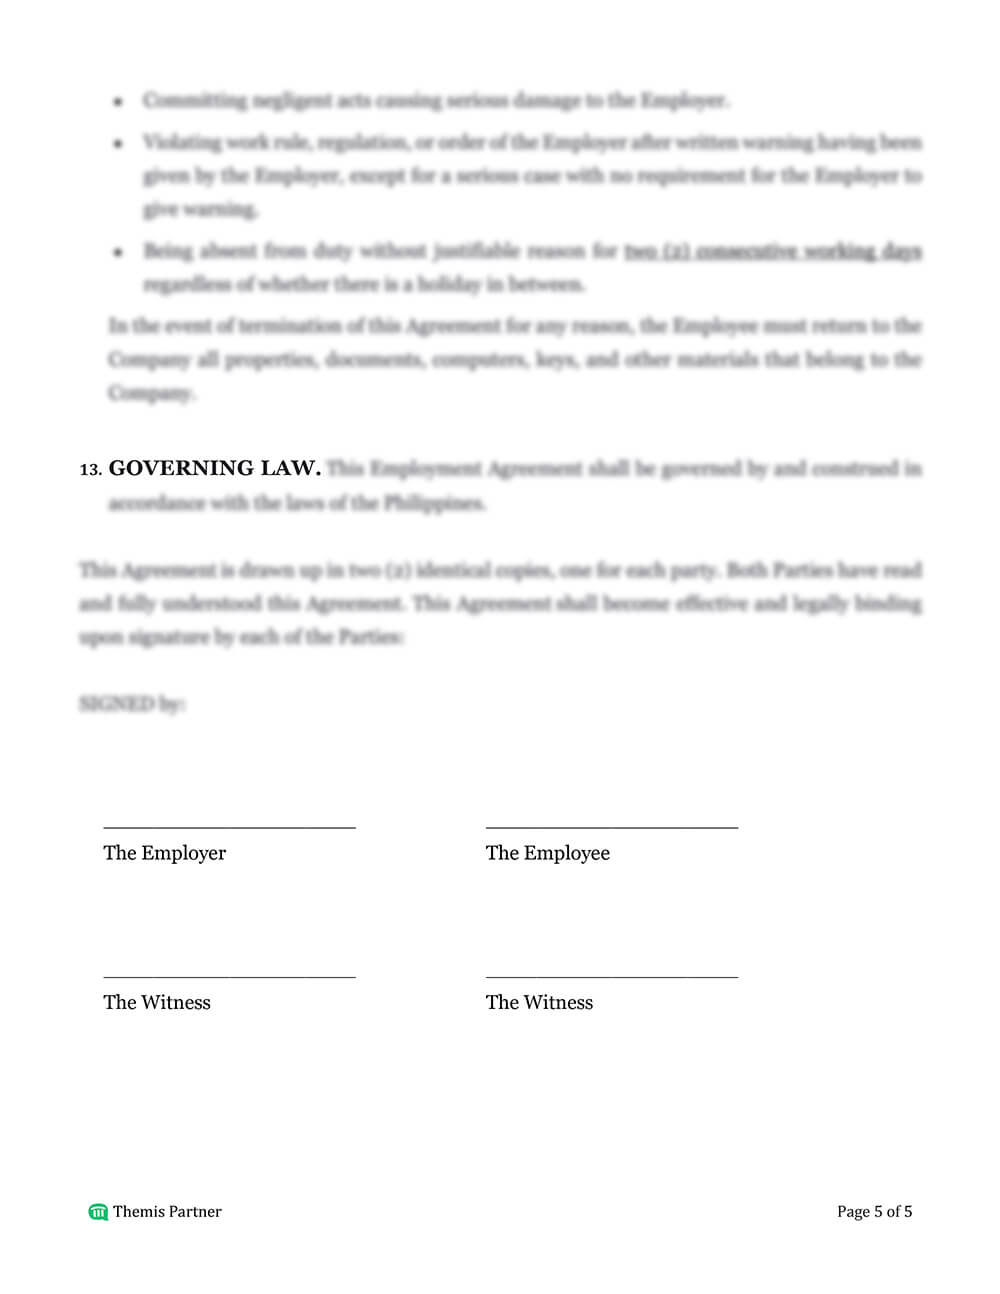 Employment agreement template 5